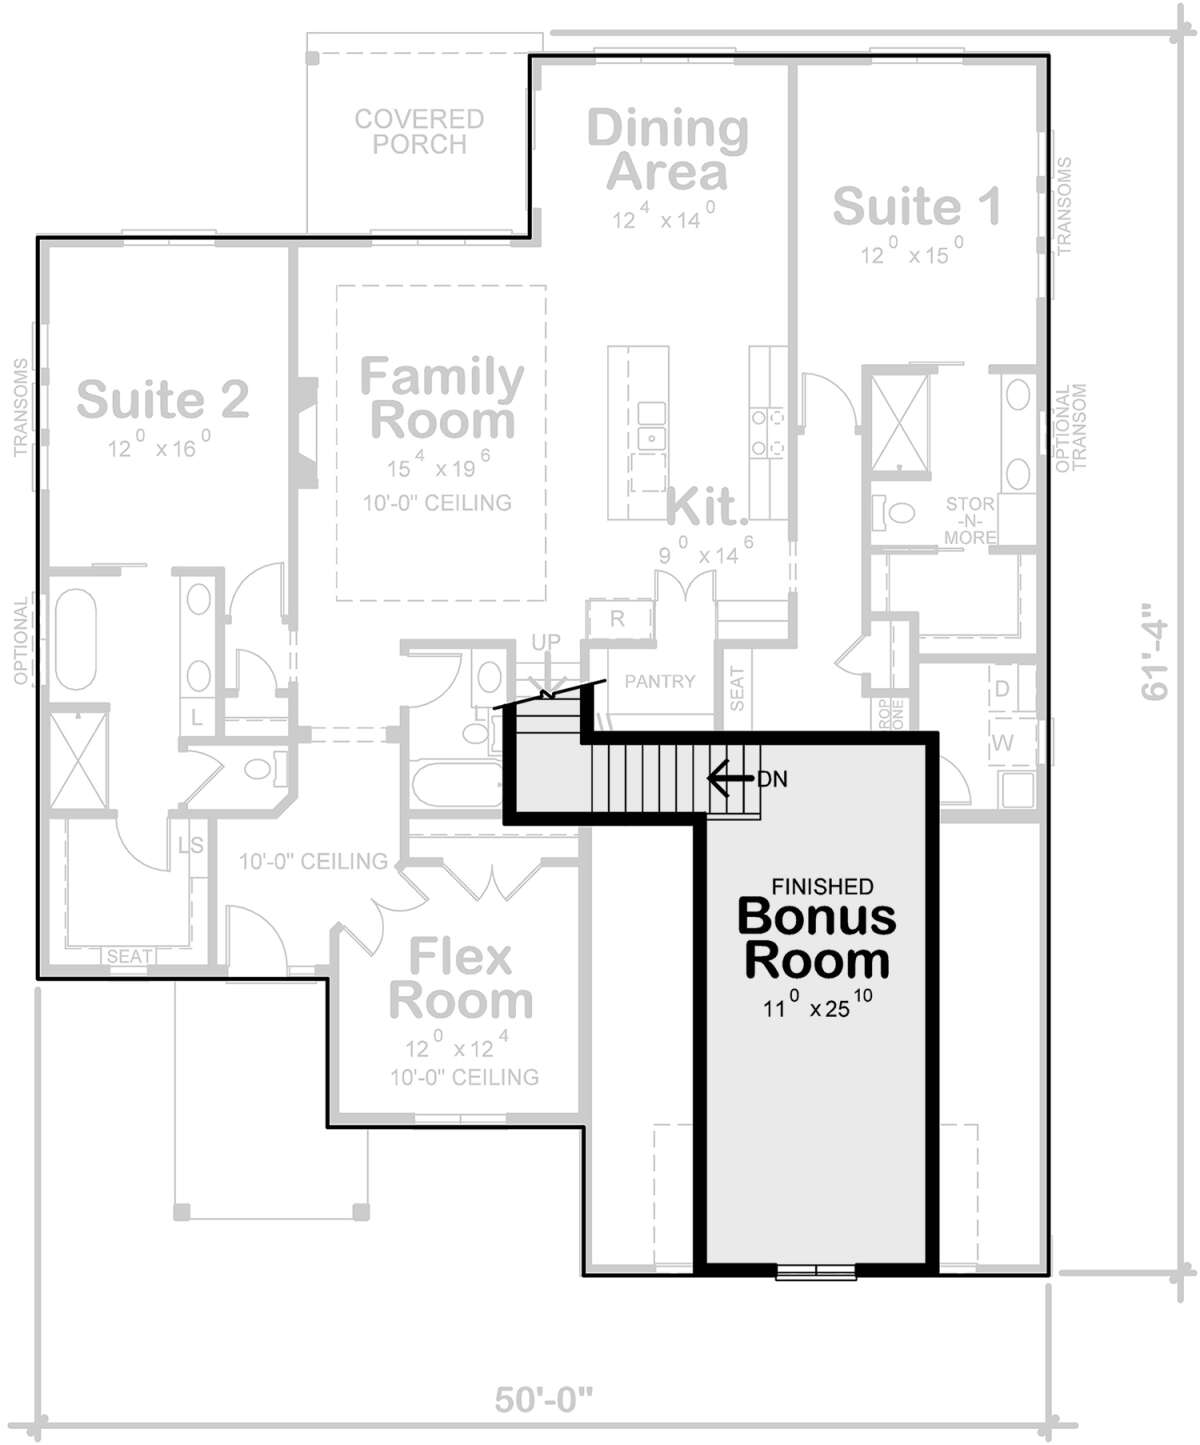 Bonus Room for House Plan #402-01769